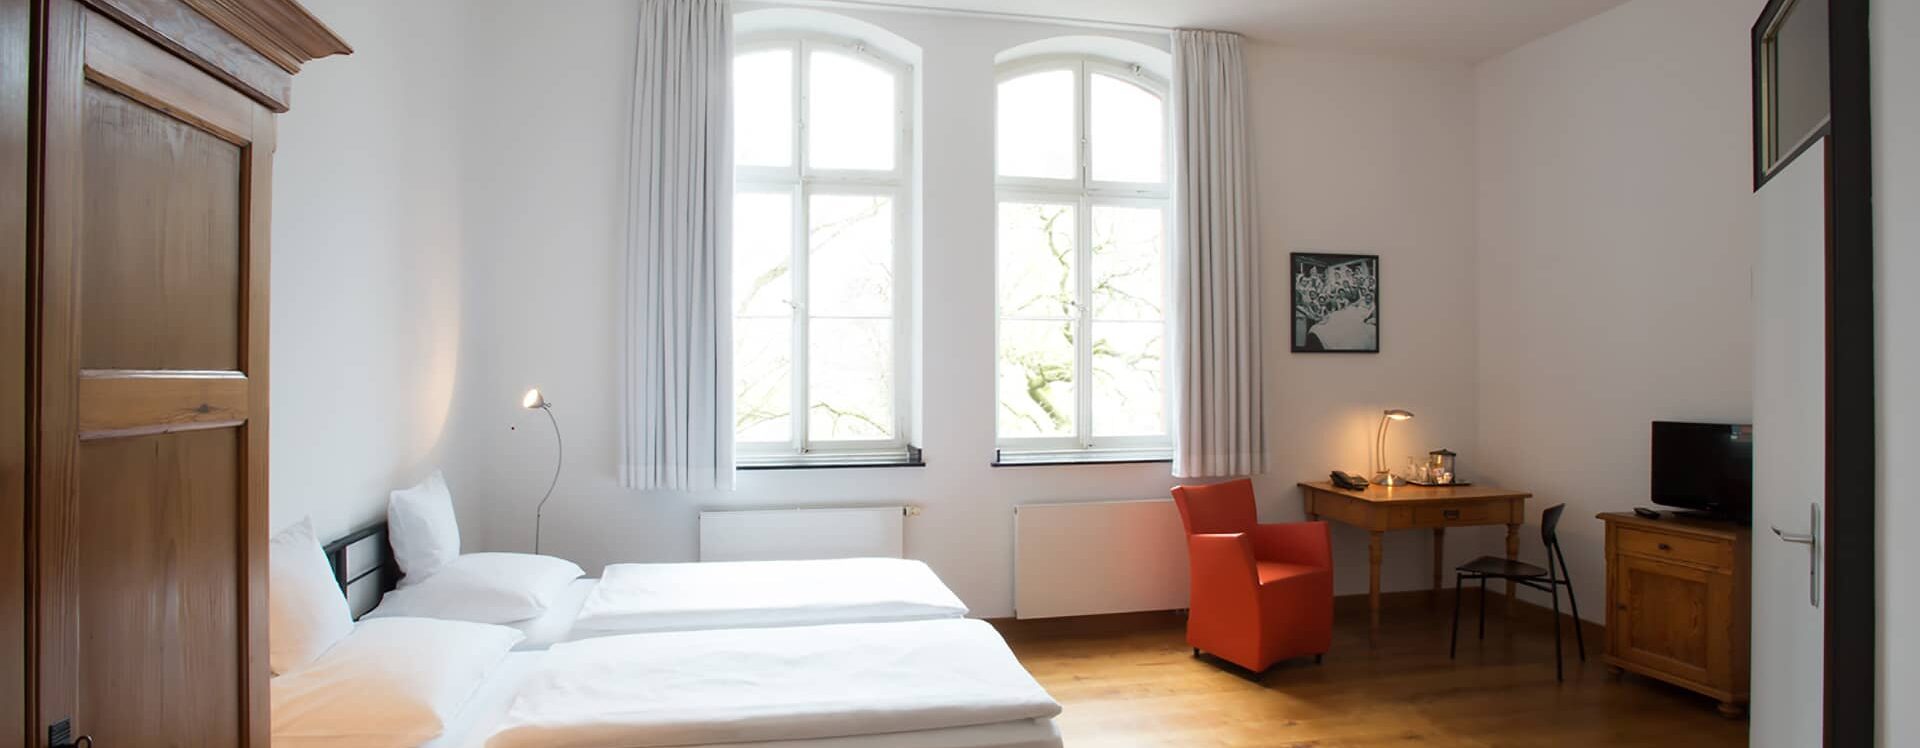 Hotelzimmer Düsseldorf - Doppelzimmer Economy